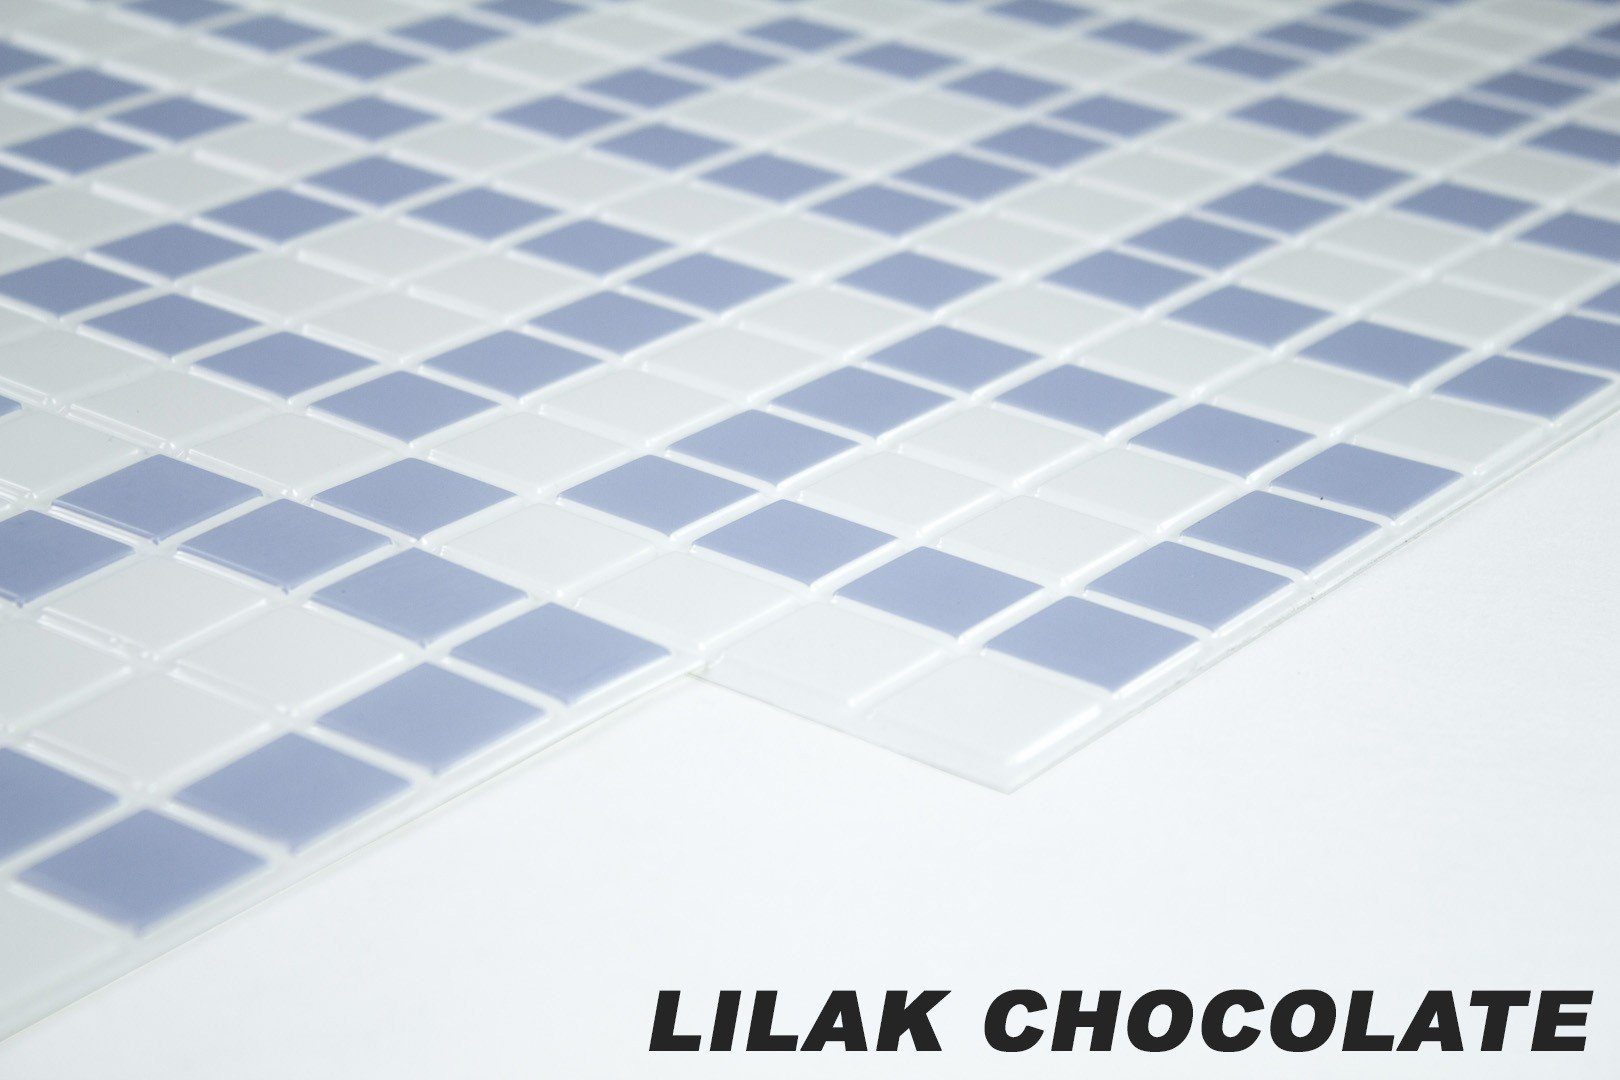 Hexim Wanddekoobjekt LILAK CHOCOLATE (Restposten! - stabile und pflegeleichte PVC Platten zur Wandverkleidung z. B. als Küchenrückwand (950x480mm) Küchenrückwand)